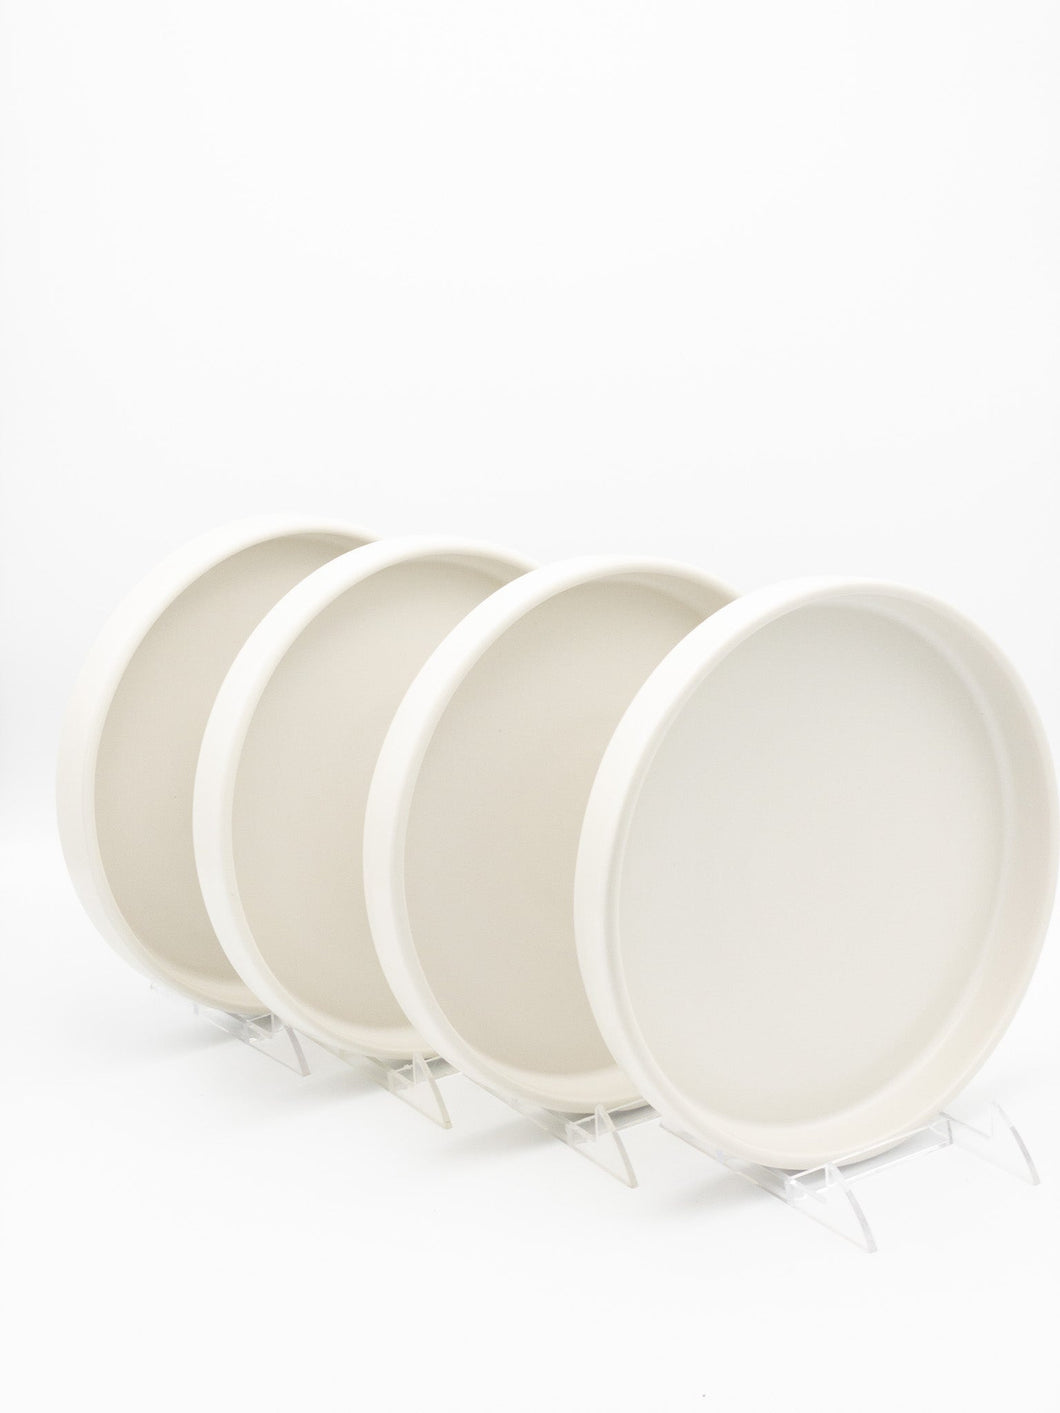 American Modern Dinner Plate – Set of 4 – Matte White